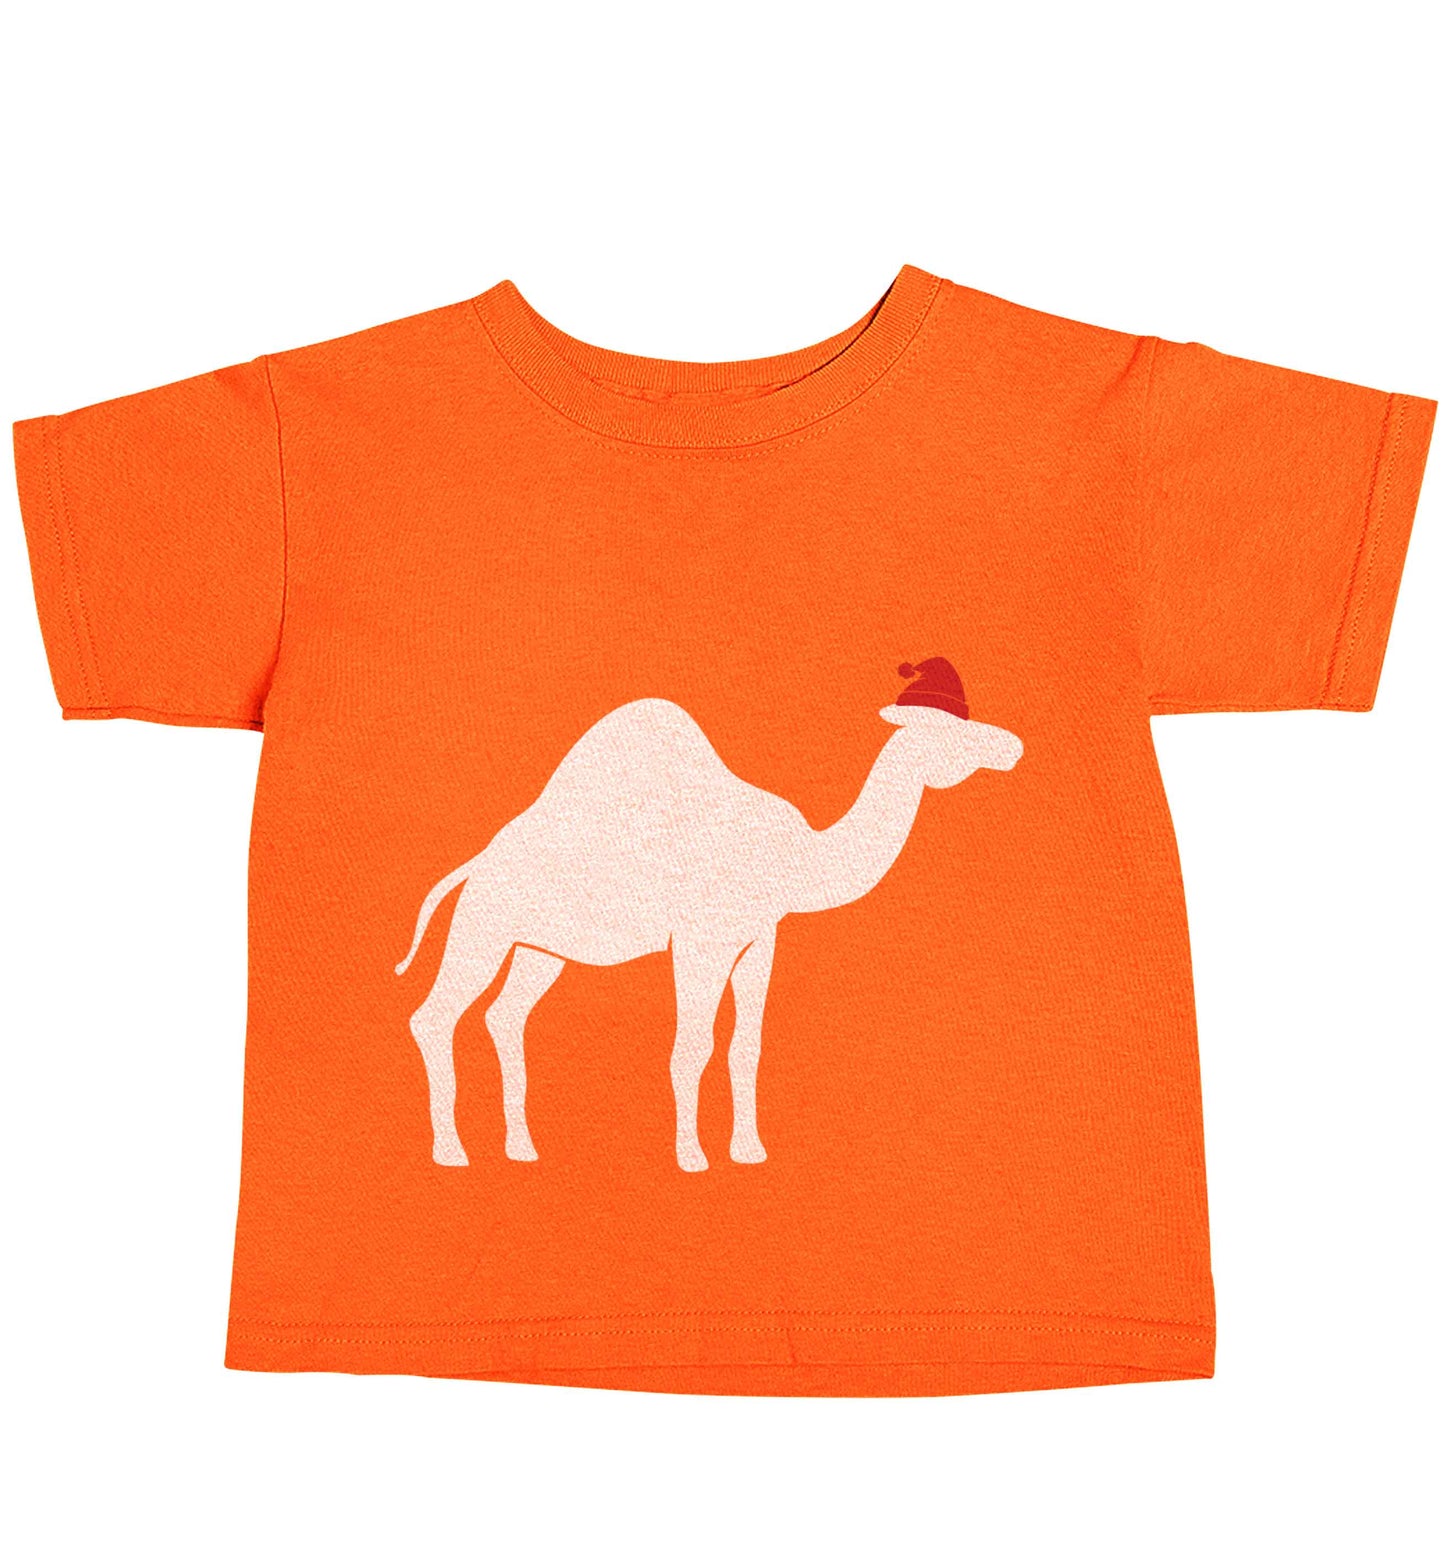 Blue camel santa orange baby toddler Tshirt 2 Years